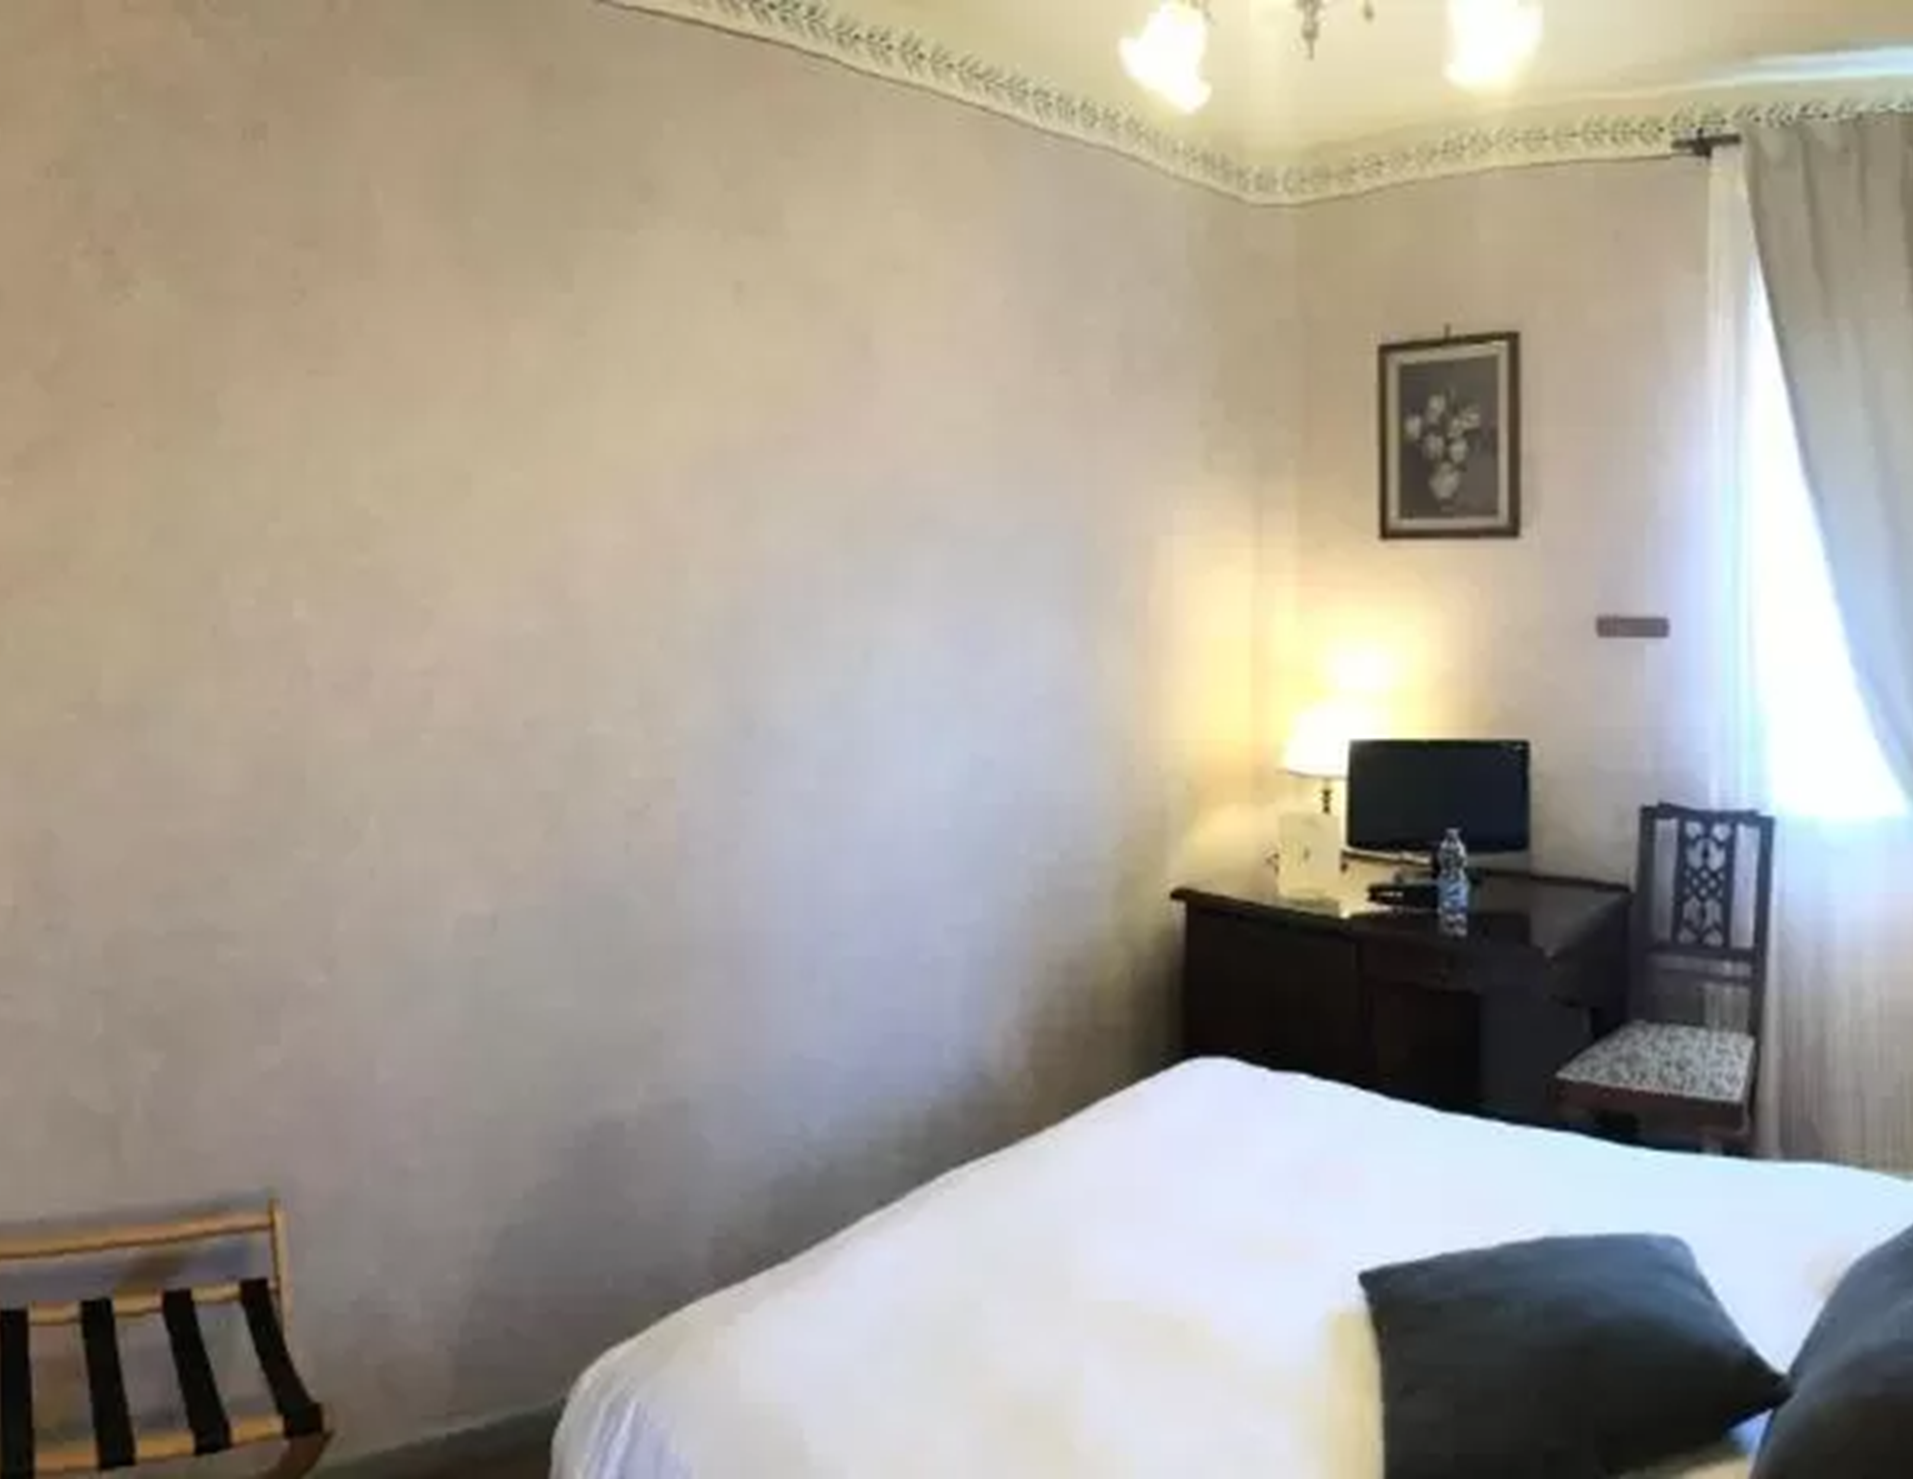 Hotel Bellavista - Room 7